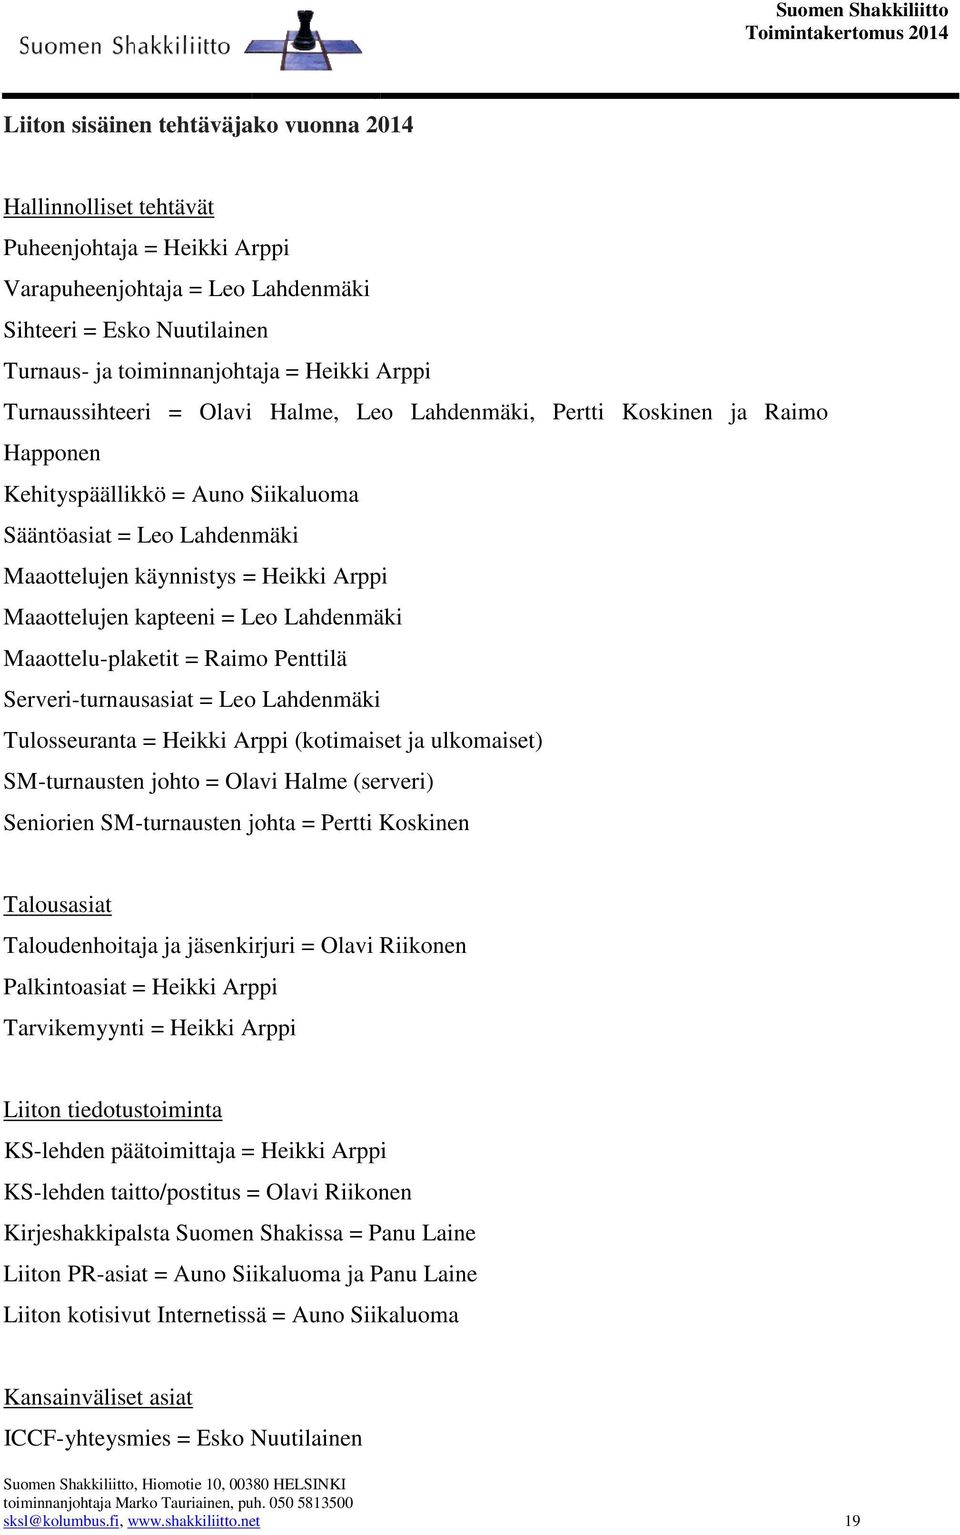 kapteeni = Leo Lahdenmäki Maaottelu-plaketit = Raimo Penttilä Serveri-turnausasiat = Leo Lahdenmäki Tulosseuranta = Heikki Arppi (kotimaiset ja ulkomaiset) SM-turnausten johto = Olavi Halme (serveri)